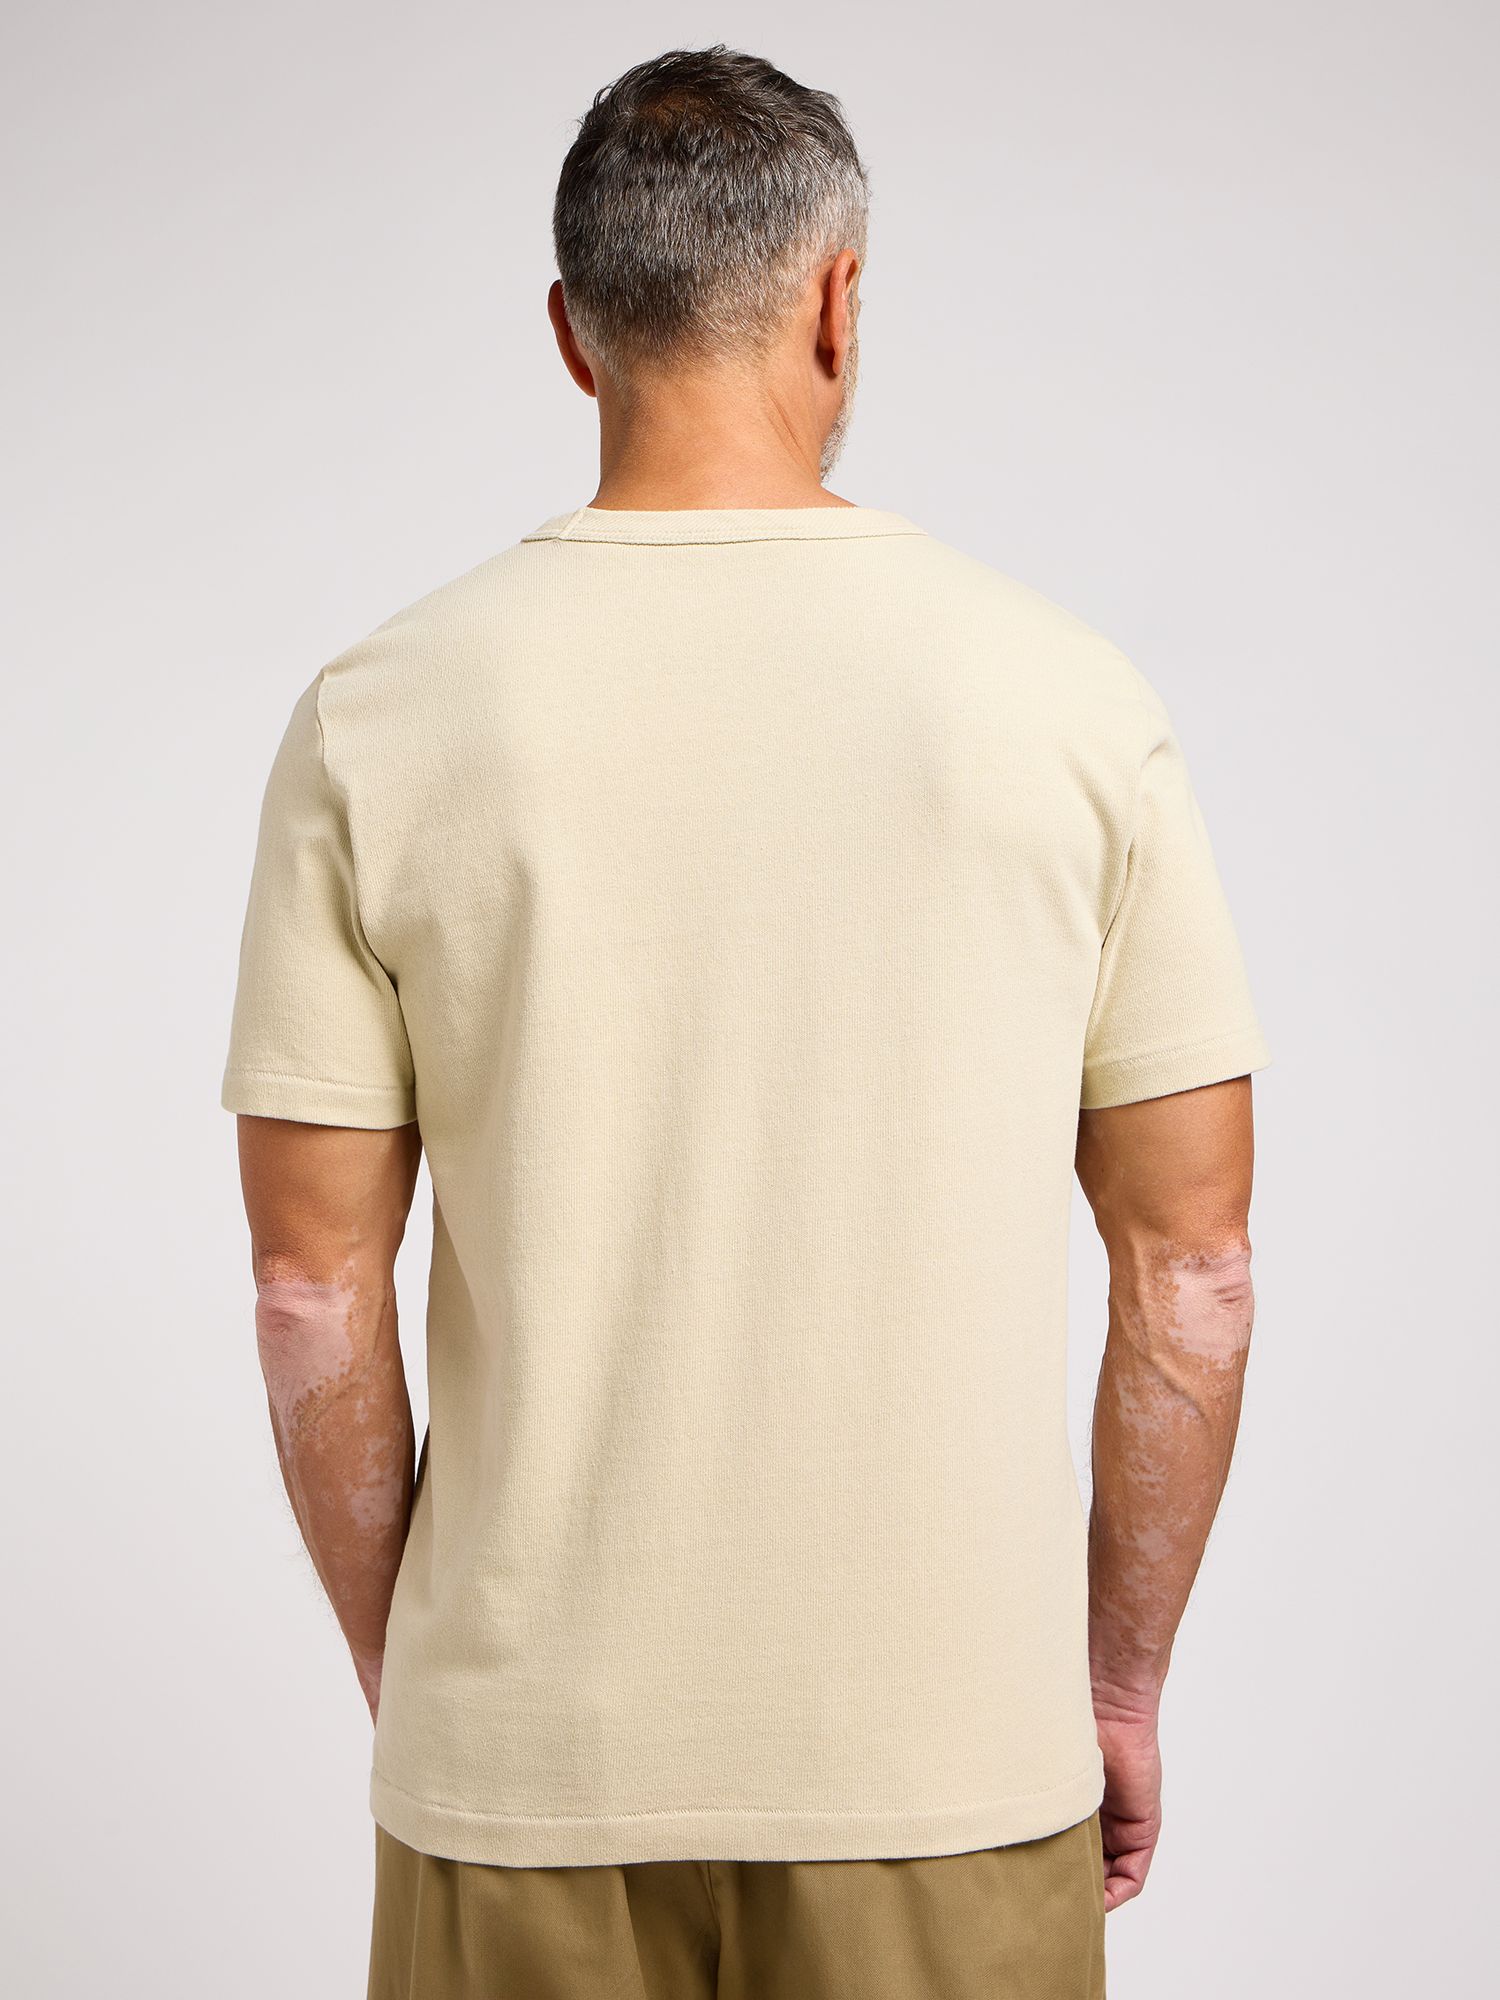 Lee 101 Cotton T-Shirt, Greige, S